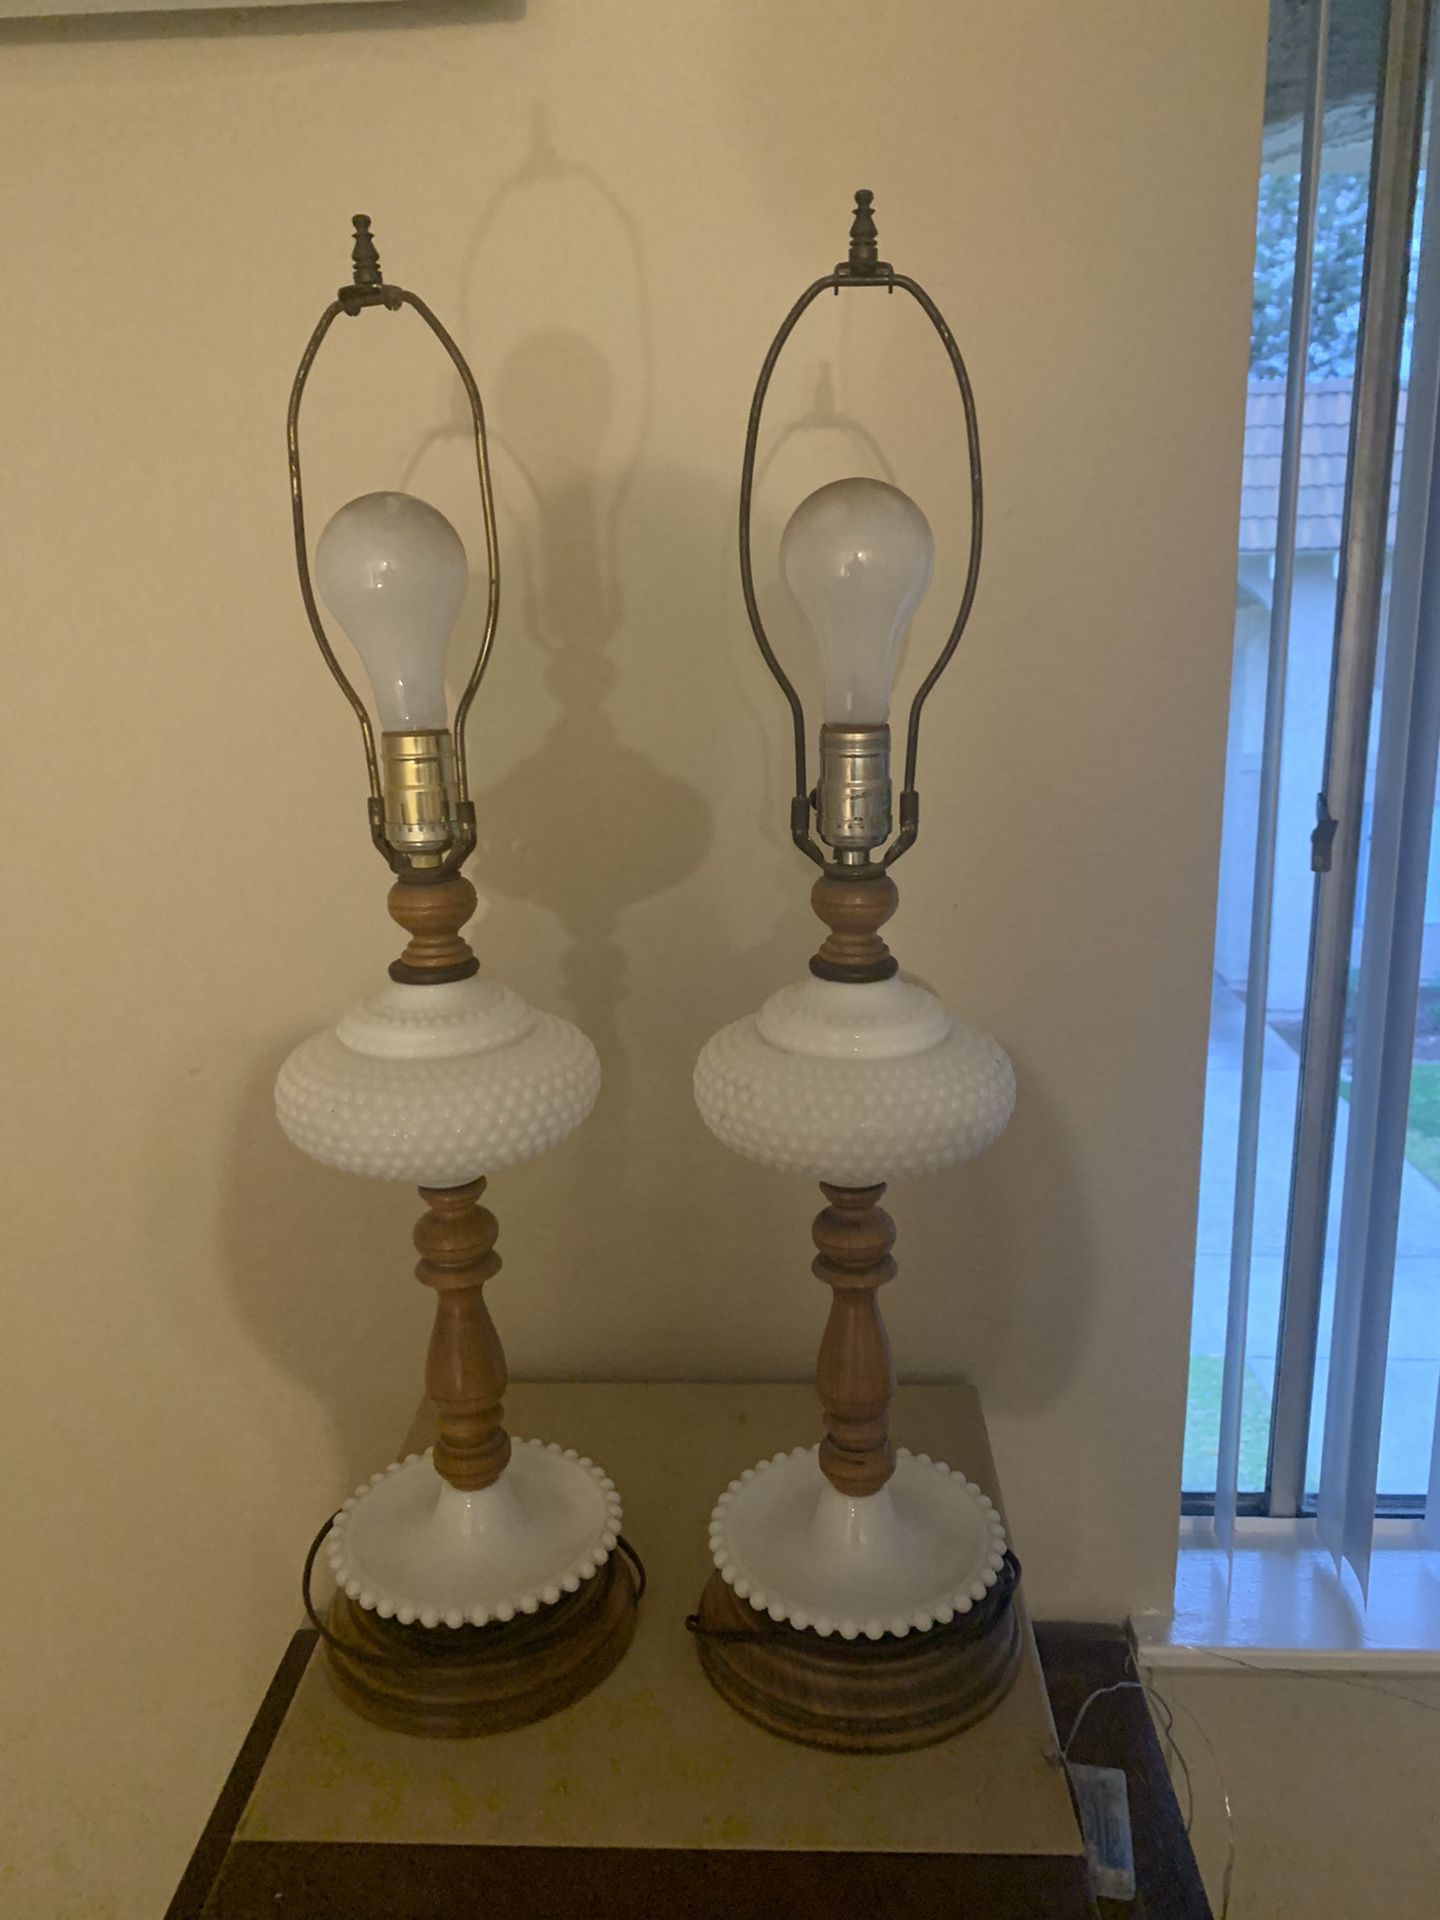 2 vintage milk glass lamps